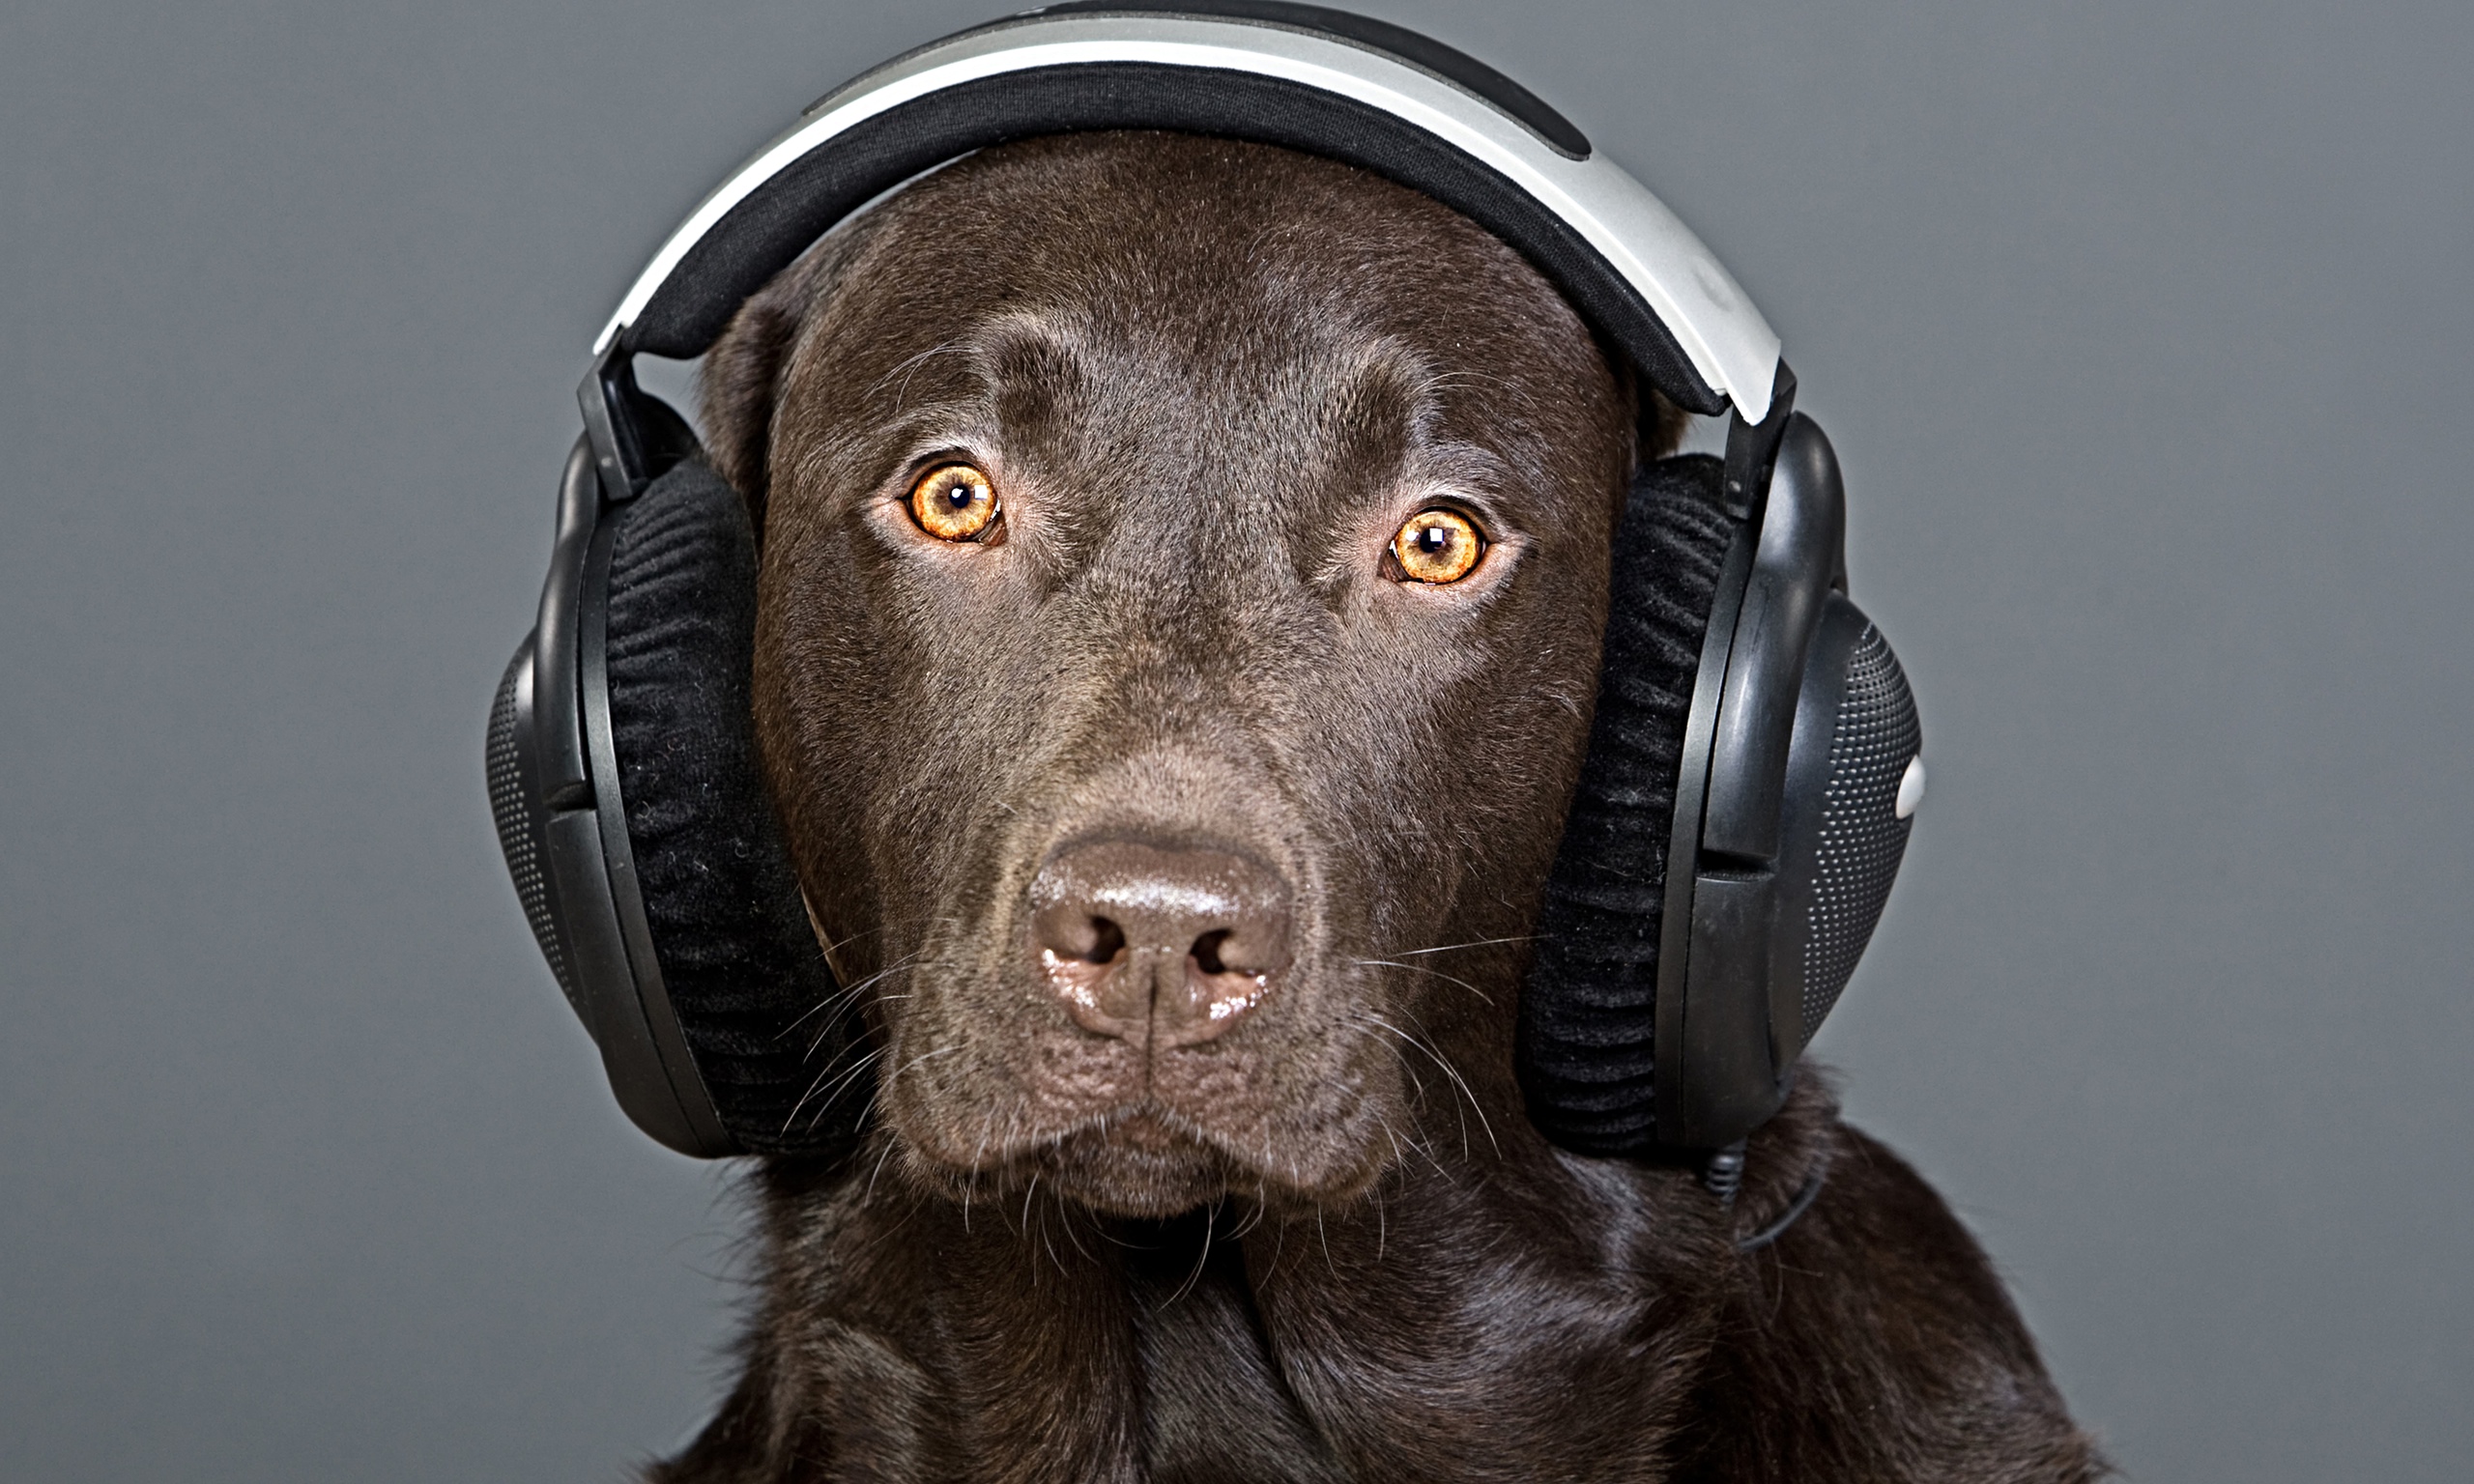 在耳机的狗听到音乐的 库存图片. 图片 包括有 声音, 宠物, 空白, 球员, 轻松, 喜悦, 滑稽, 开会 - 99718037